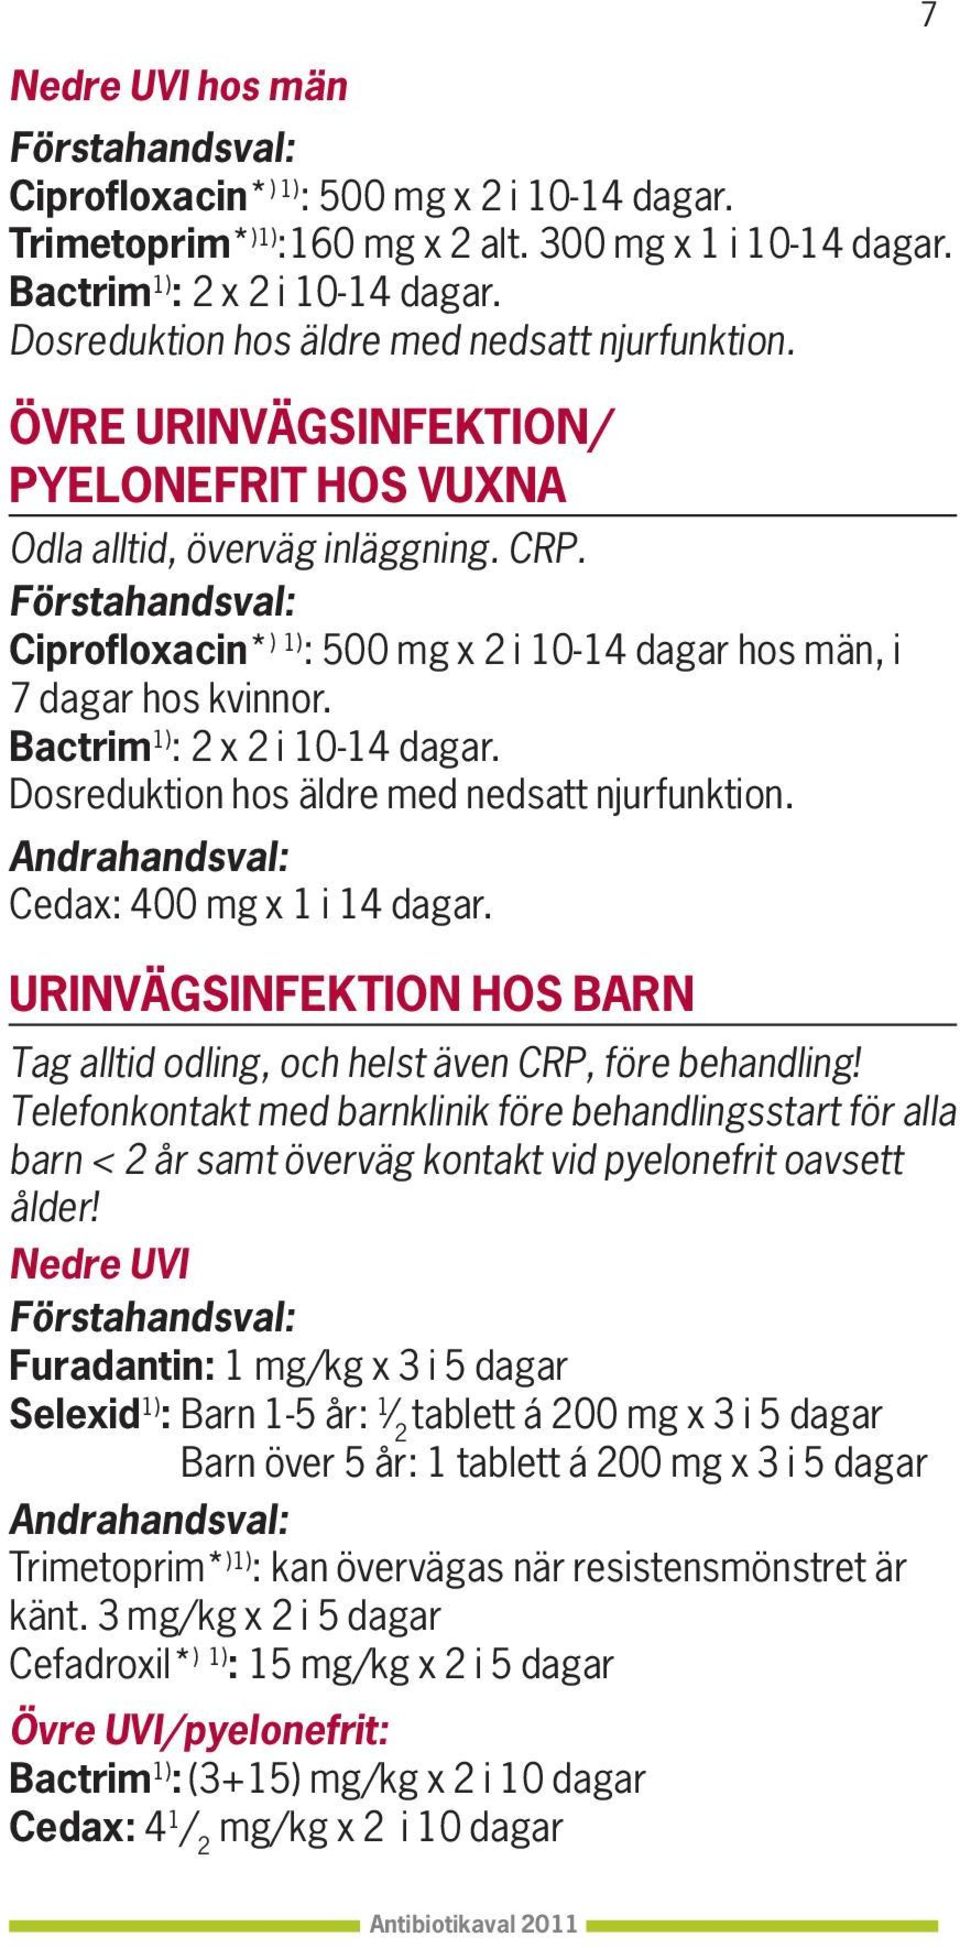 Ciprofloxacin* ) 1) : 500 mg x 2 i 10-14 dagar hos män, i 7 dagar hos kvinnor. Bactrim 1) : 2 x 2 i 10-14 dagar. Dosreduktion hos äldre med nedsatt njurfunktion.